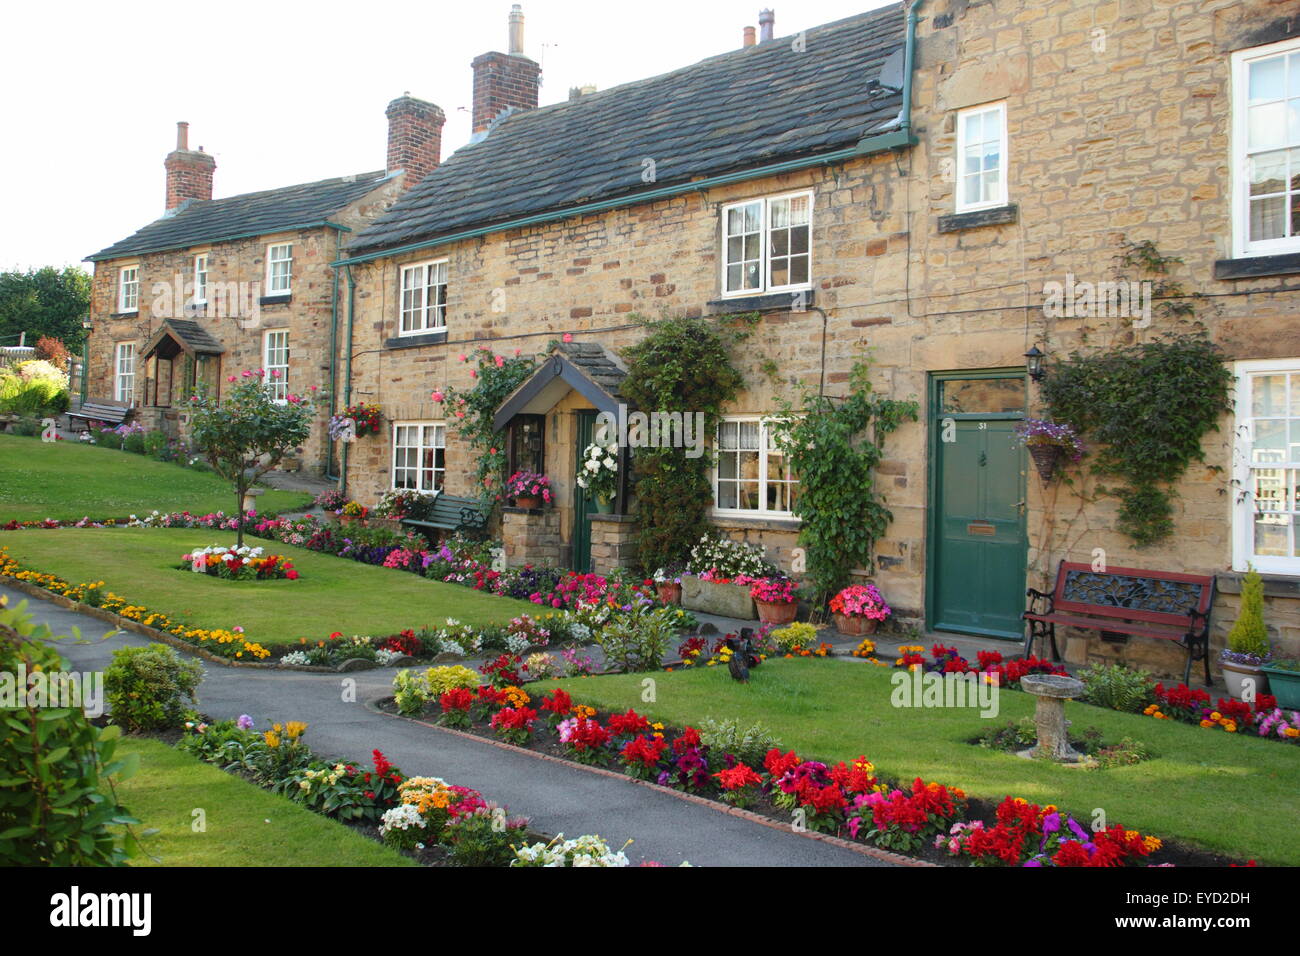 Construit en pierre traditionnelle britannique chalets avec jardin immaculé dans une succession de frontières English Village, South Yorkshire, Angleterre, Royaume-Uni Banque D'Images